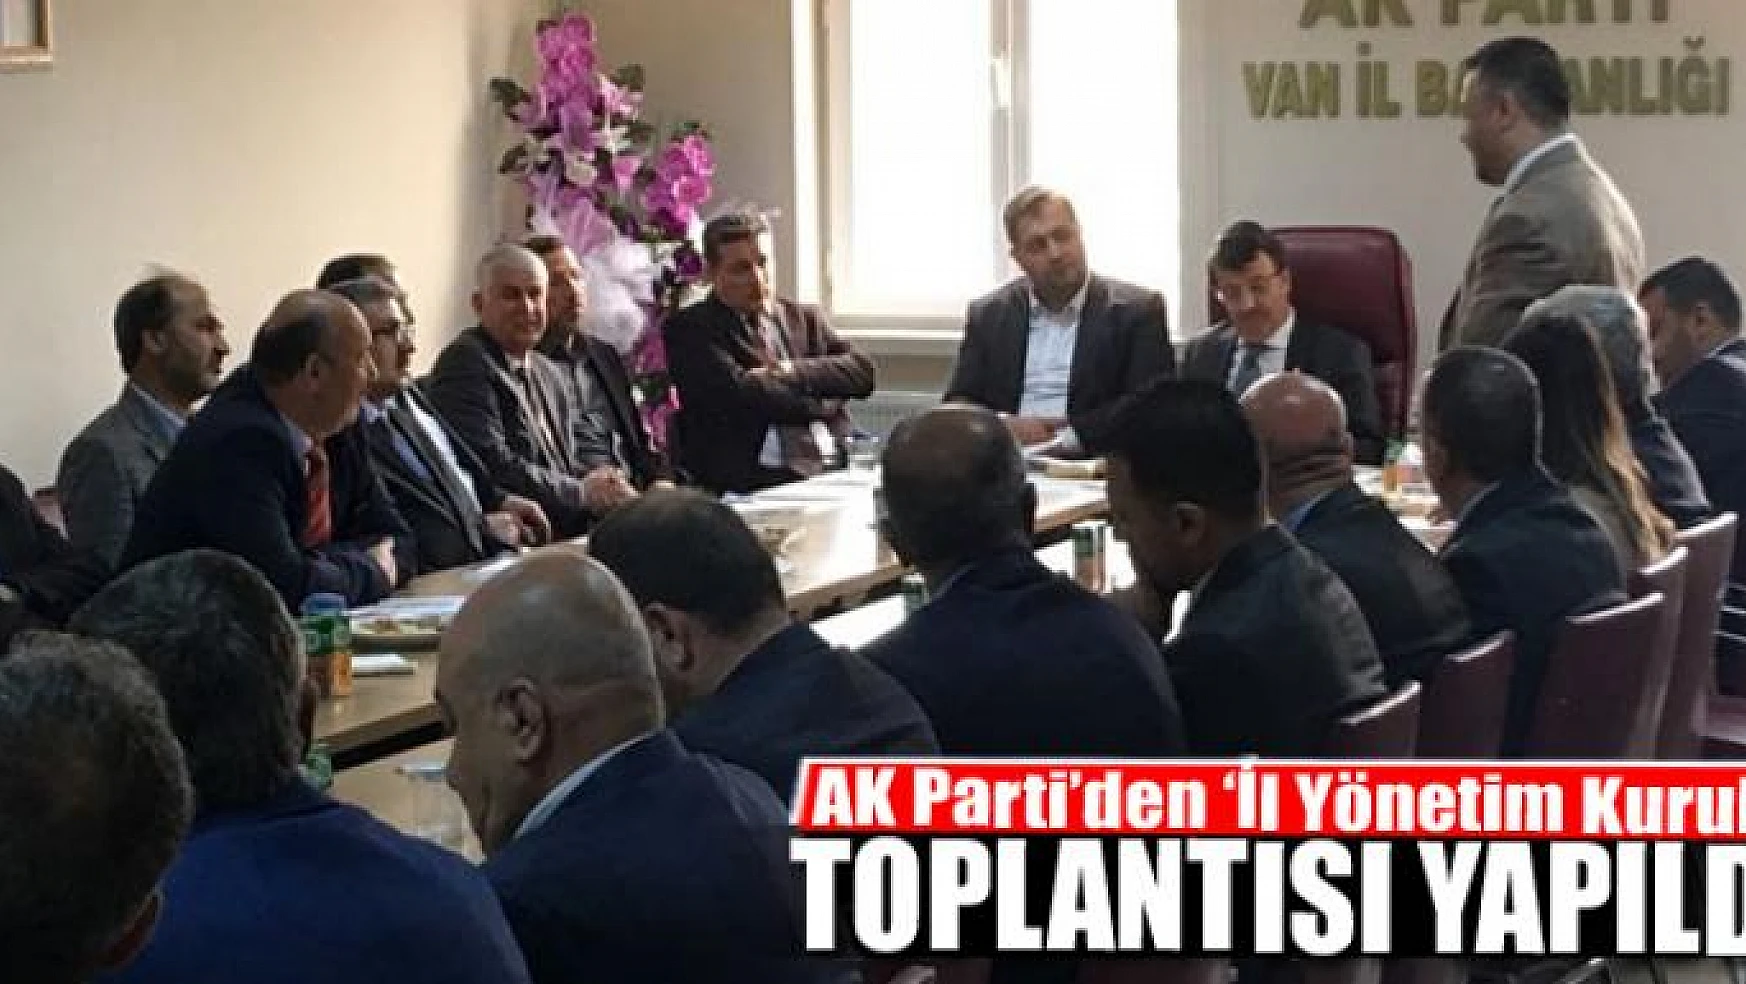  AK Parti'den 'İl Yönetim Kurulu' toplantısı 